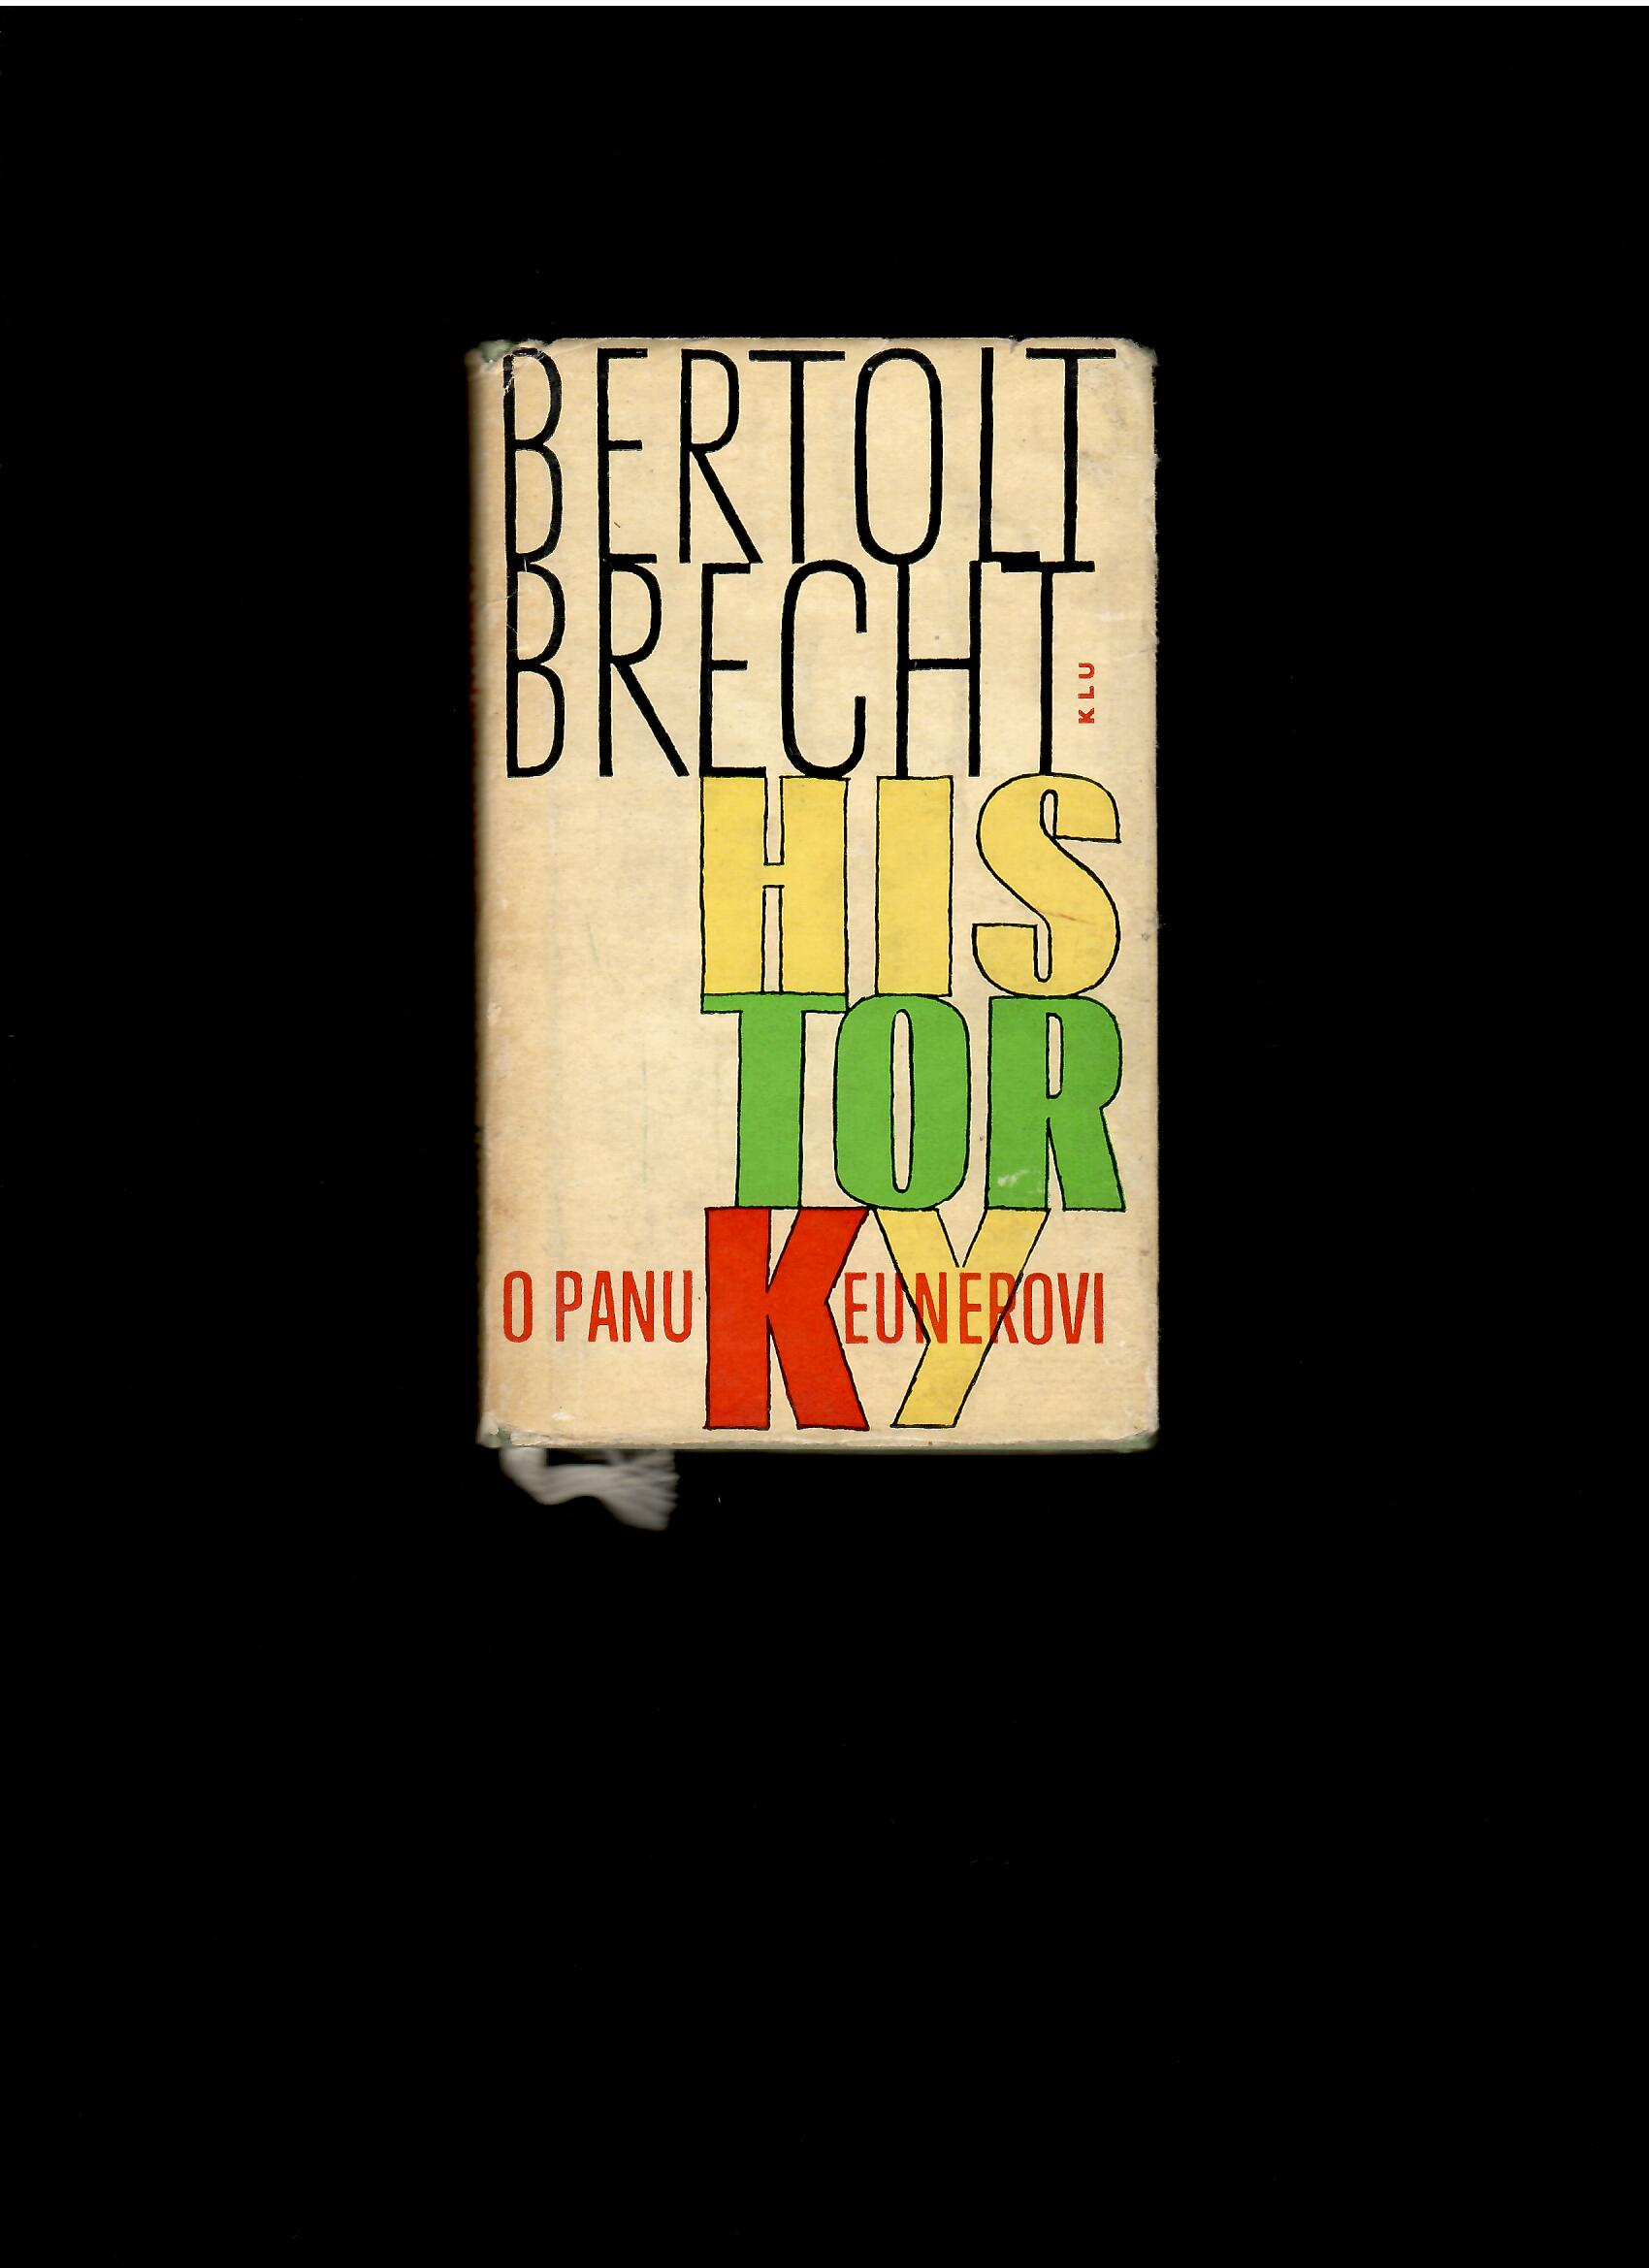 Bertolt Brecht: Historky o panu Keunerovi